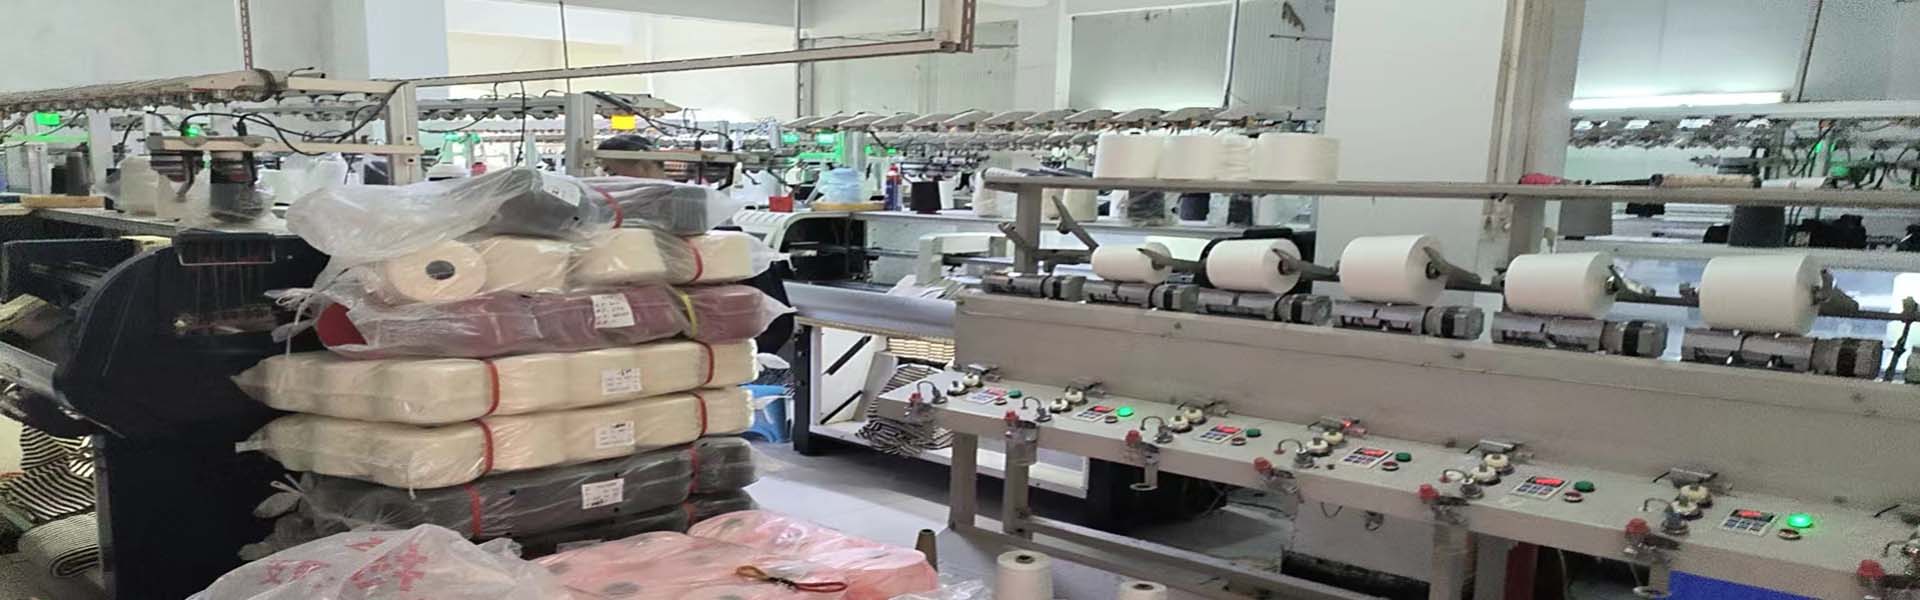 Dongguan Xuan Cheng Textiles Limited